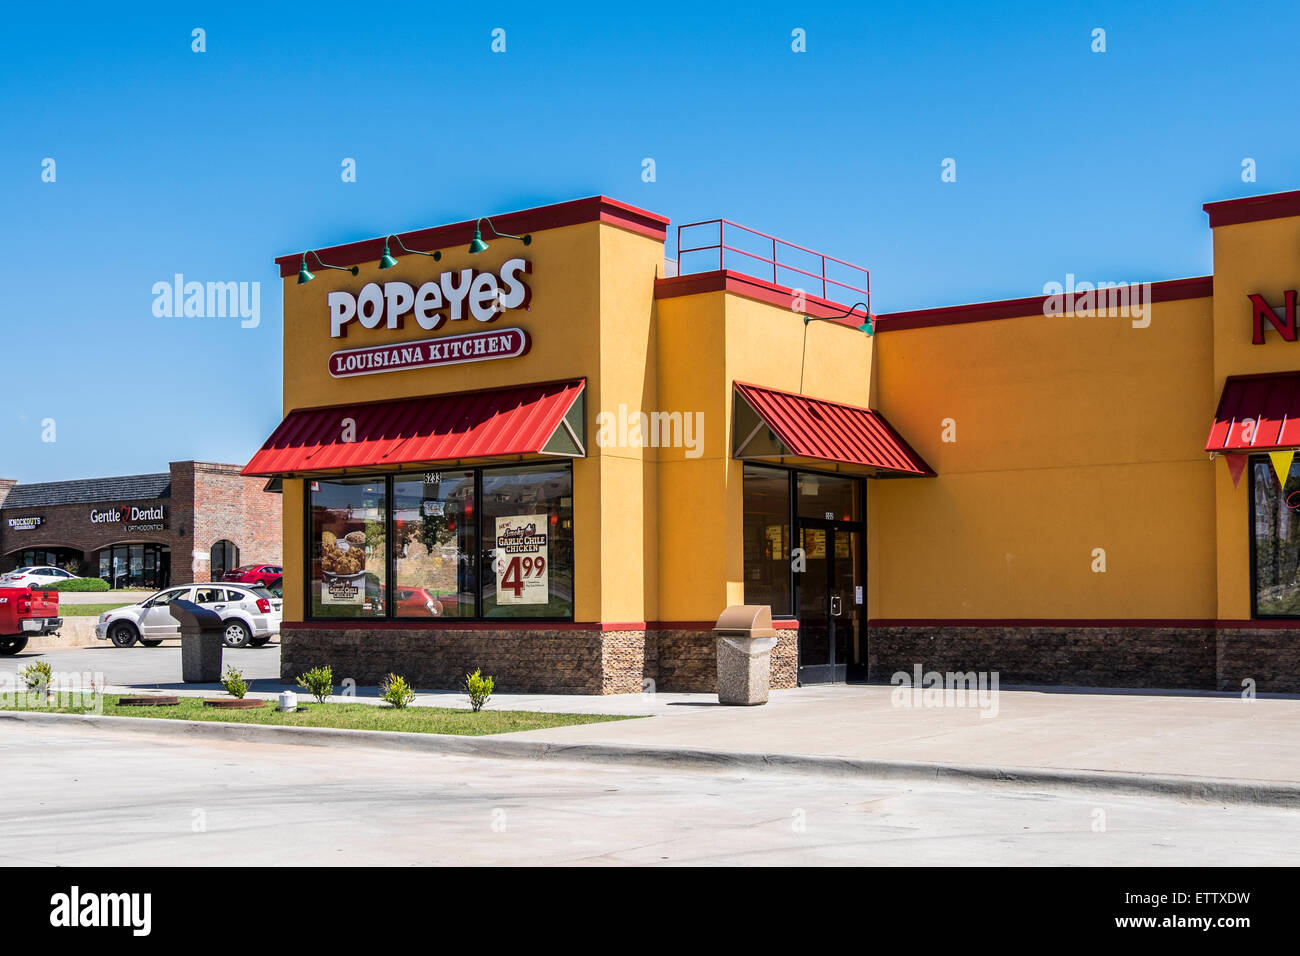 Popeyes Louisiana Kitchen, l'extérieur d'un restaurant de style cajun et de la restauration rapide franchise. Oklahoma City, Oklahoma, États-Unis. Banque D'Images